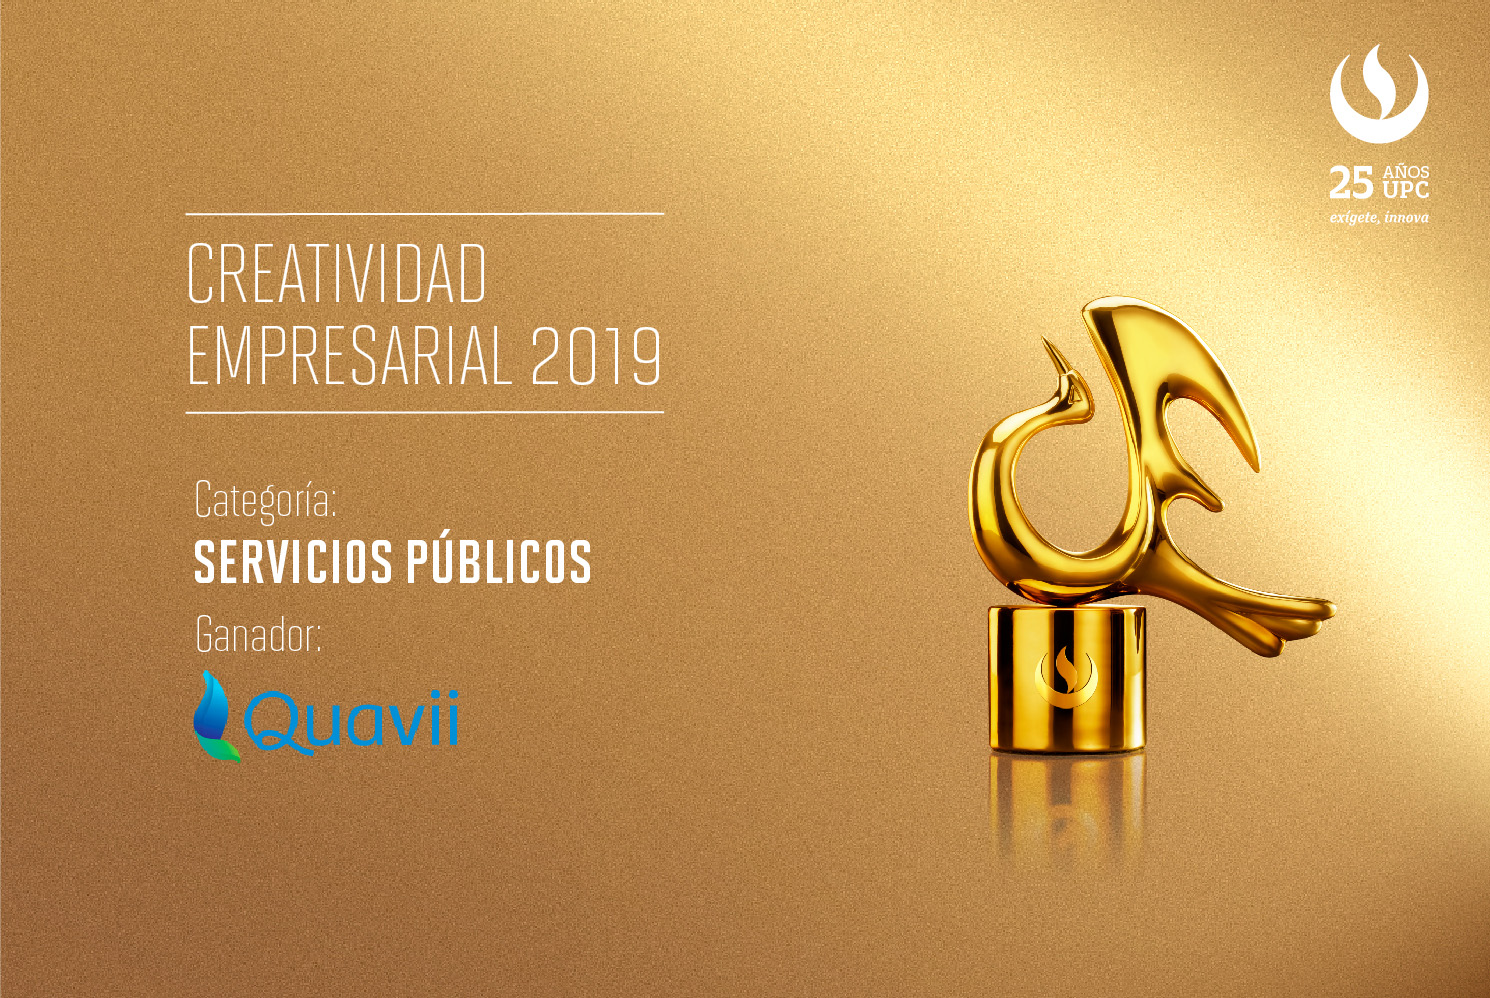 Creatividad Empresarial 2019:  QUAVII fue premiada en la categoría Servicios Públicos